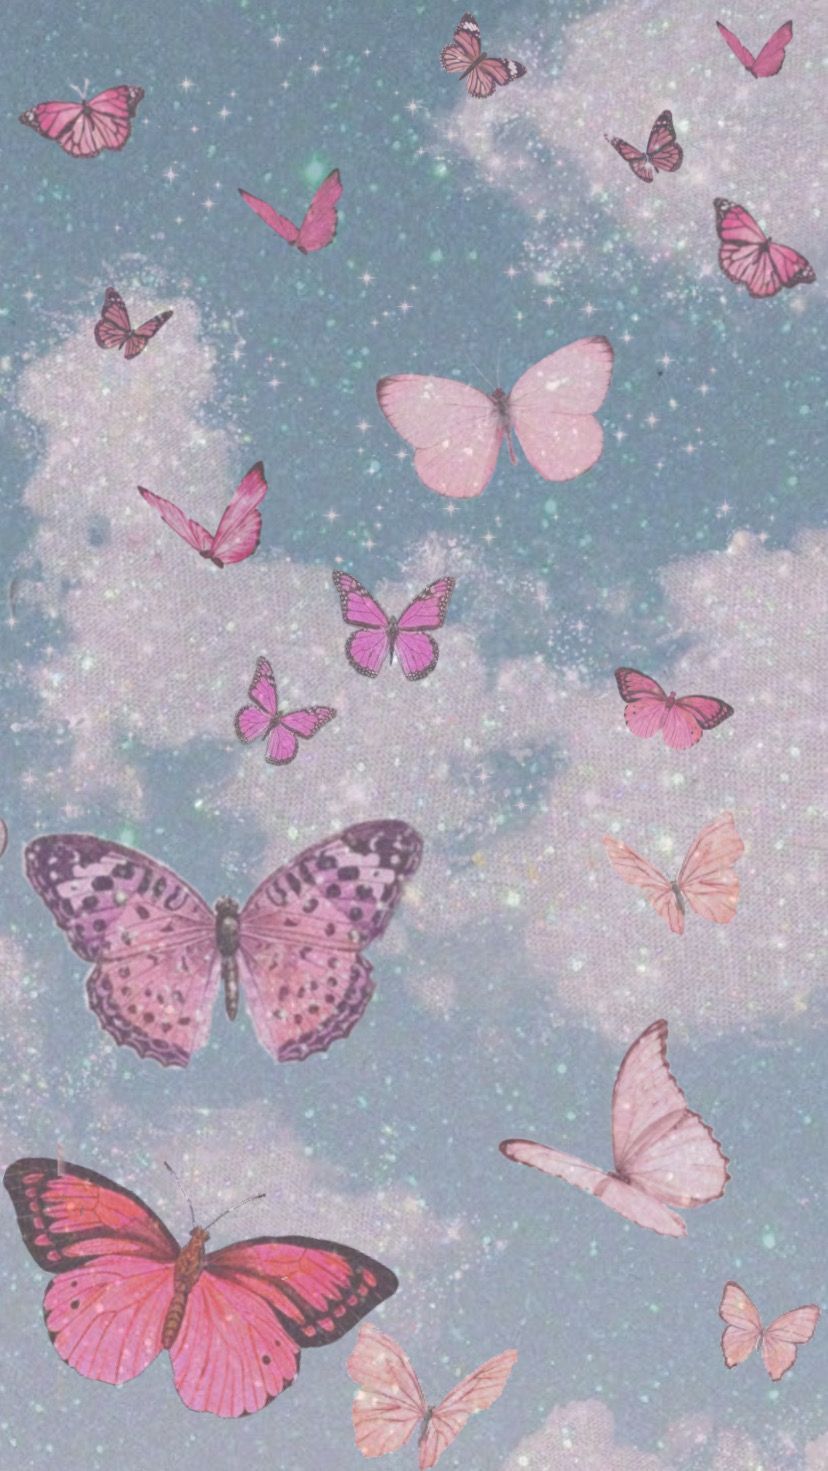 Pink butterflies. Butterfly wallpaper iphone, Butterfly wallpaper, iPhone wallpaper tumblr aesthetic